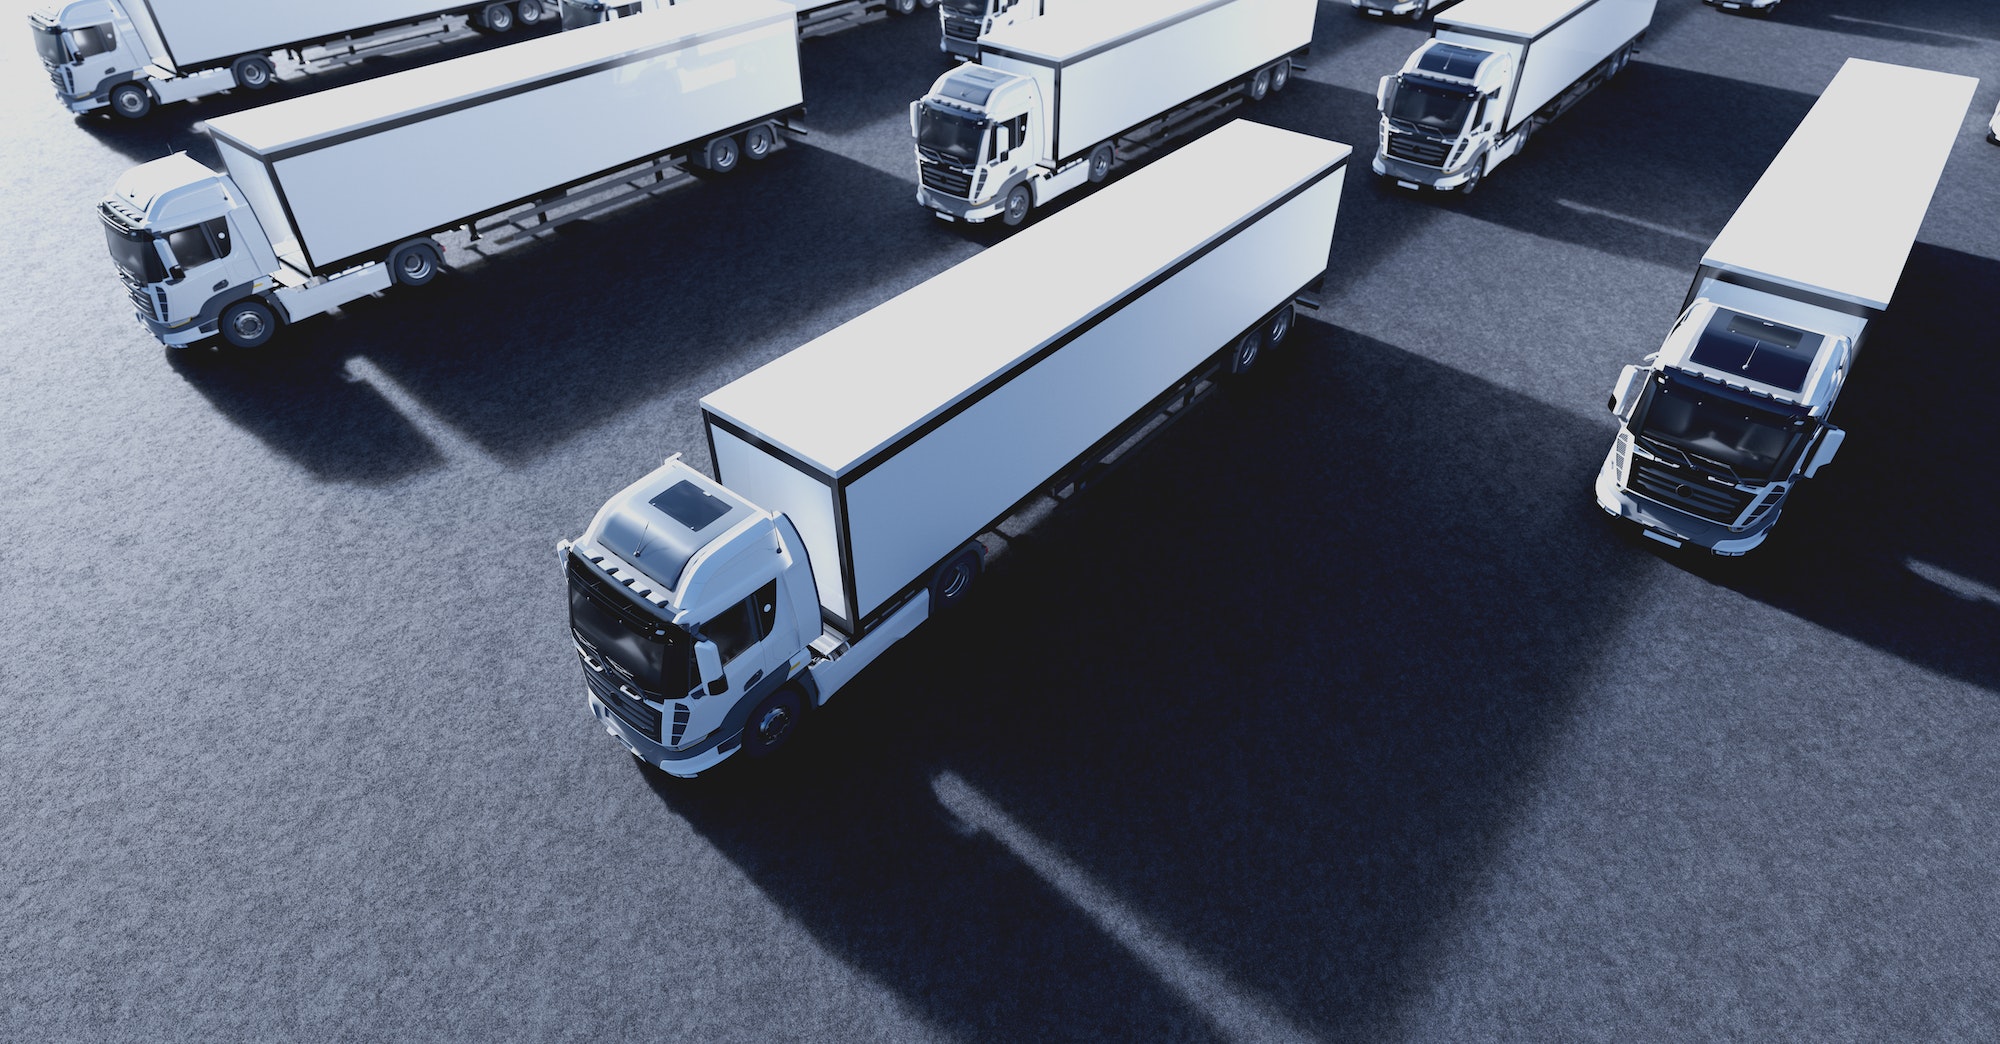 Fleet of new heavy trucks. Transportation, shipping industry